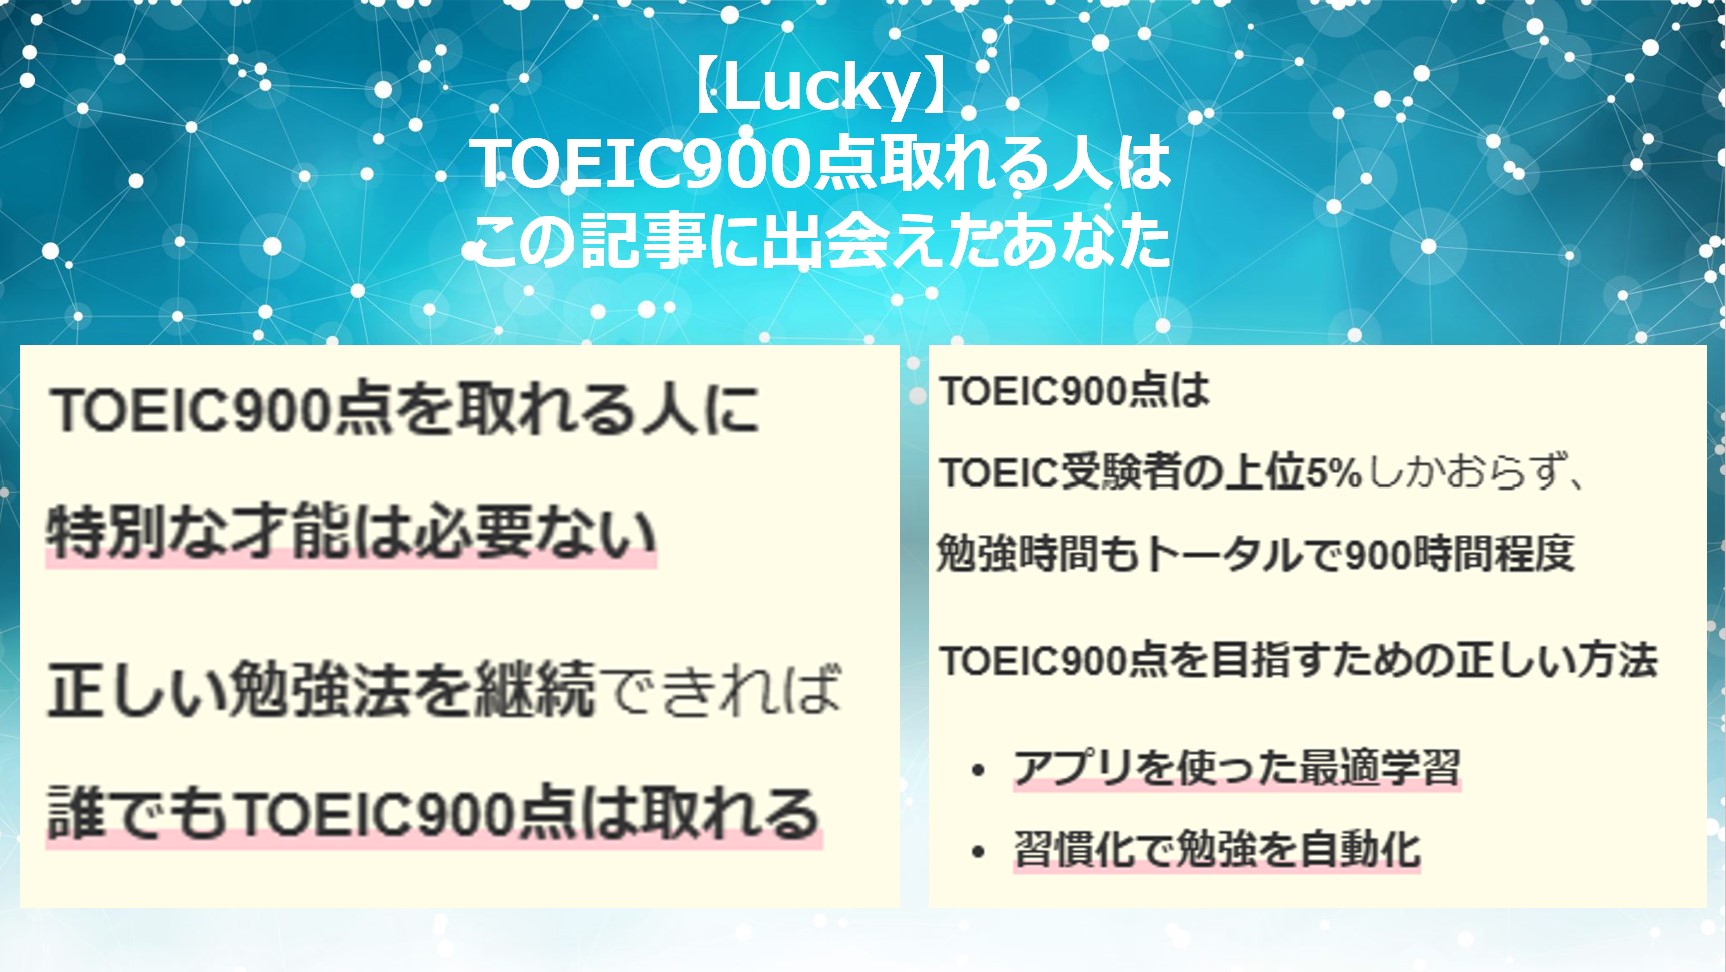 【Lucky】TOEIC900点取れる人はこの記事に出会えたあなた